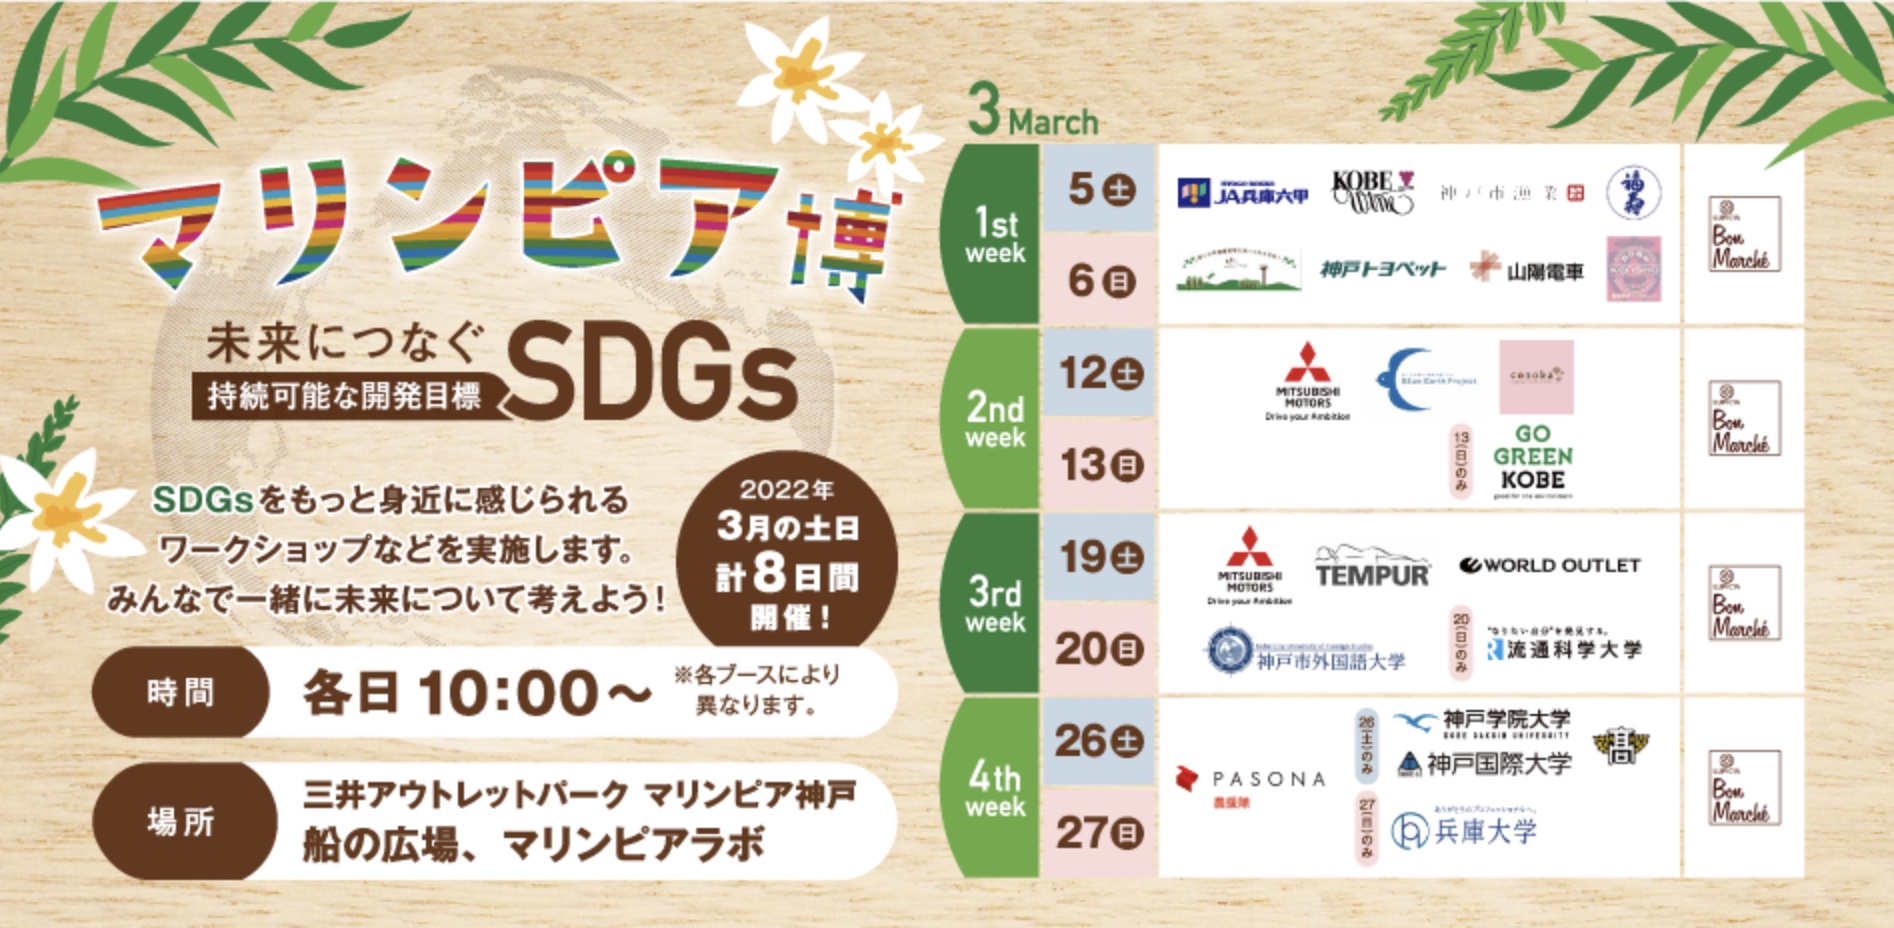 「マリンピア博 未来につなぐSDGs」週末限定開催イベントに参加します